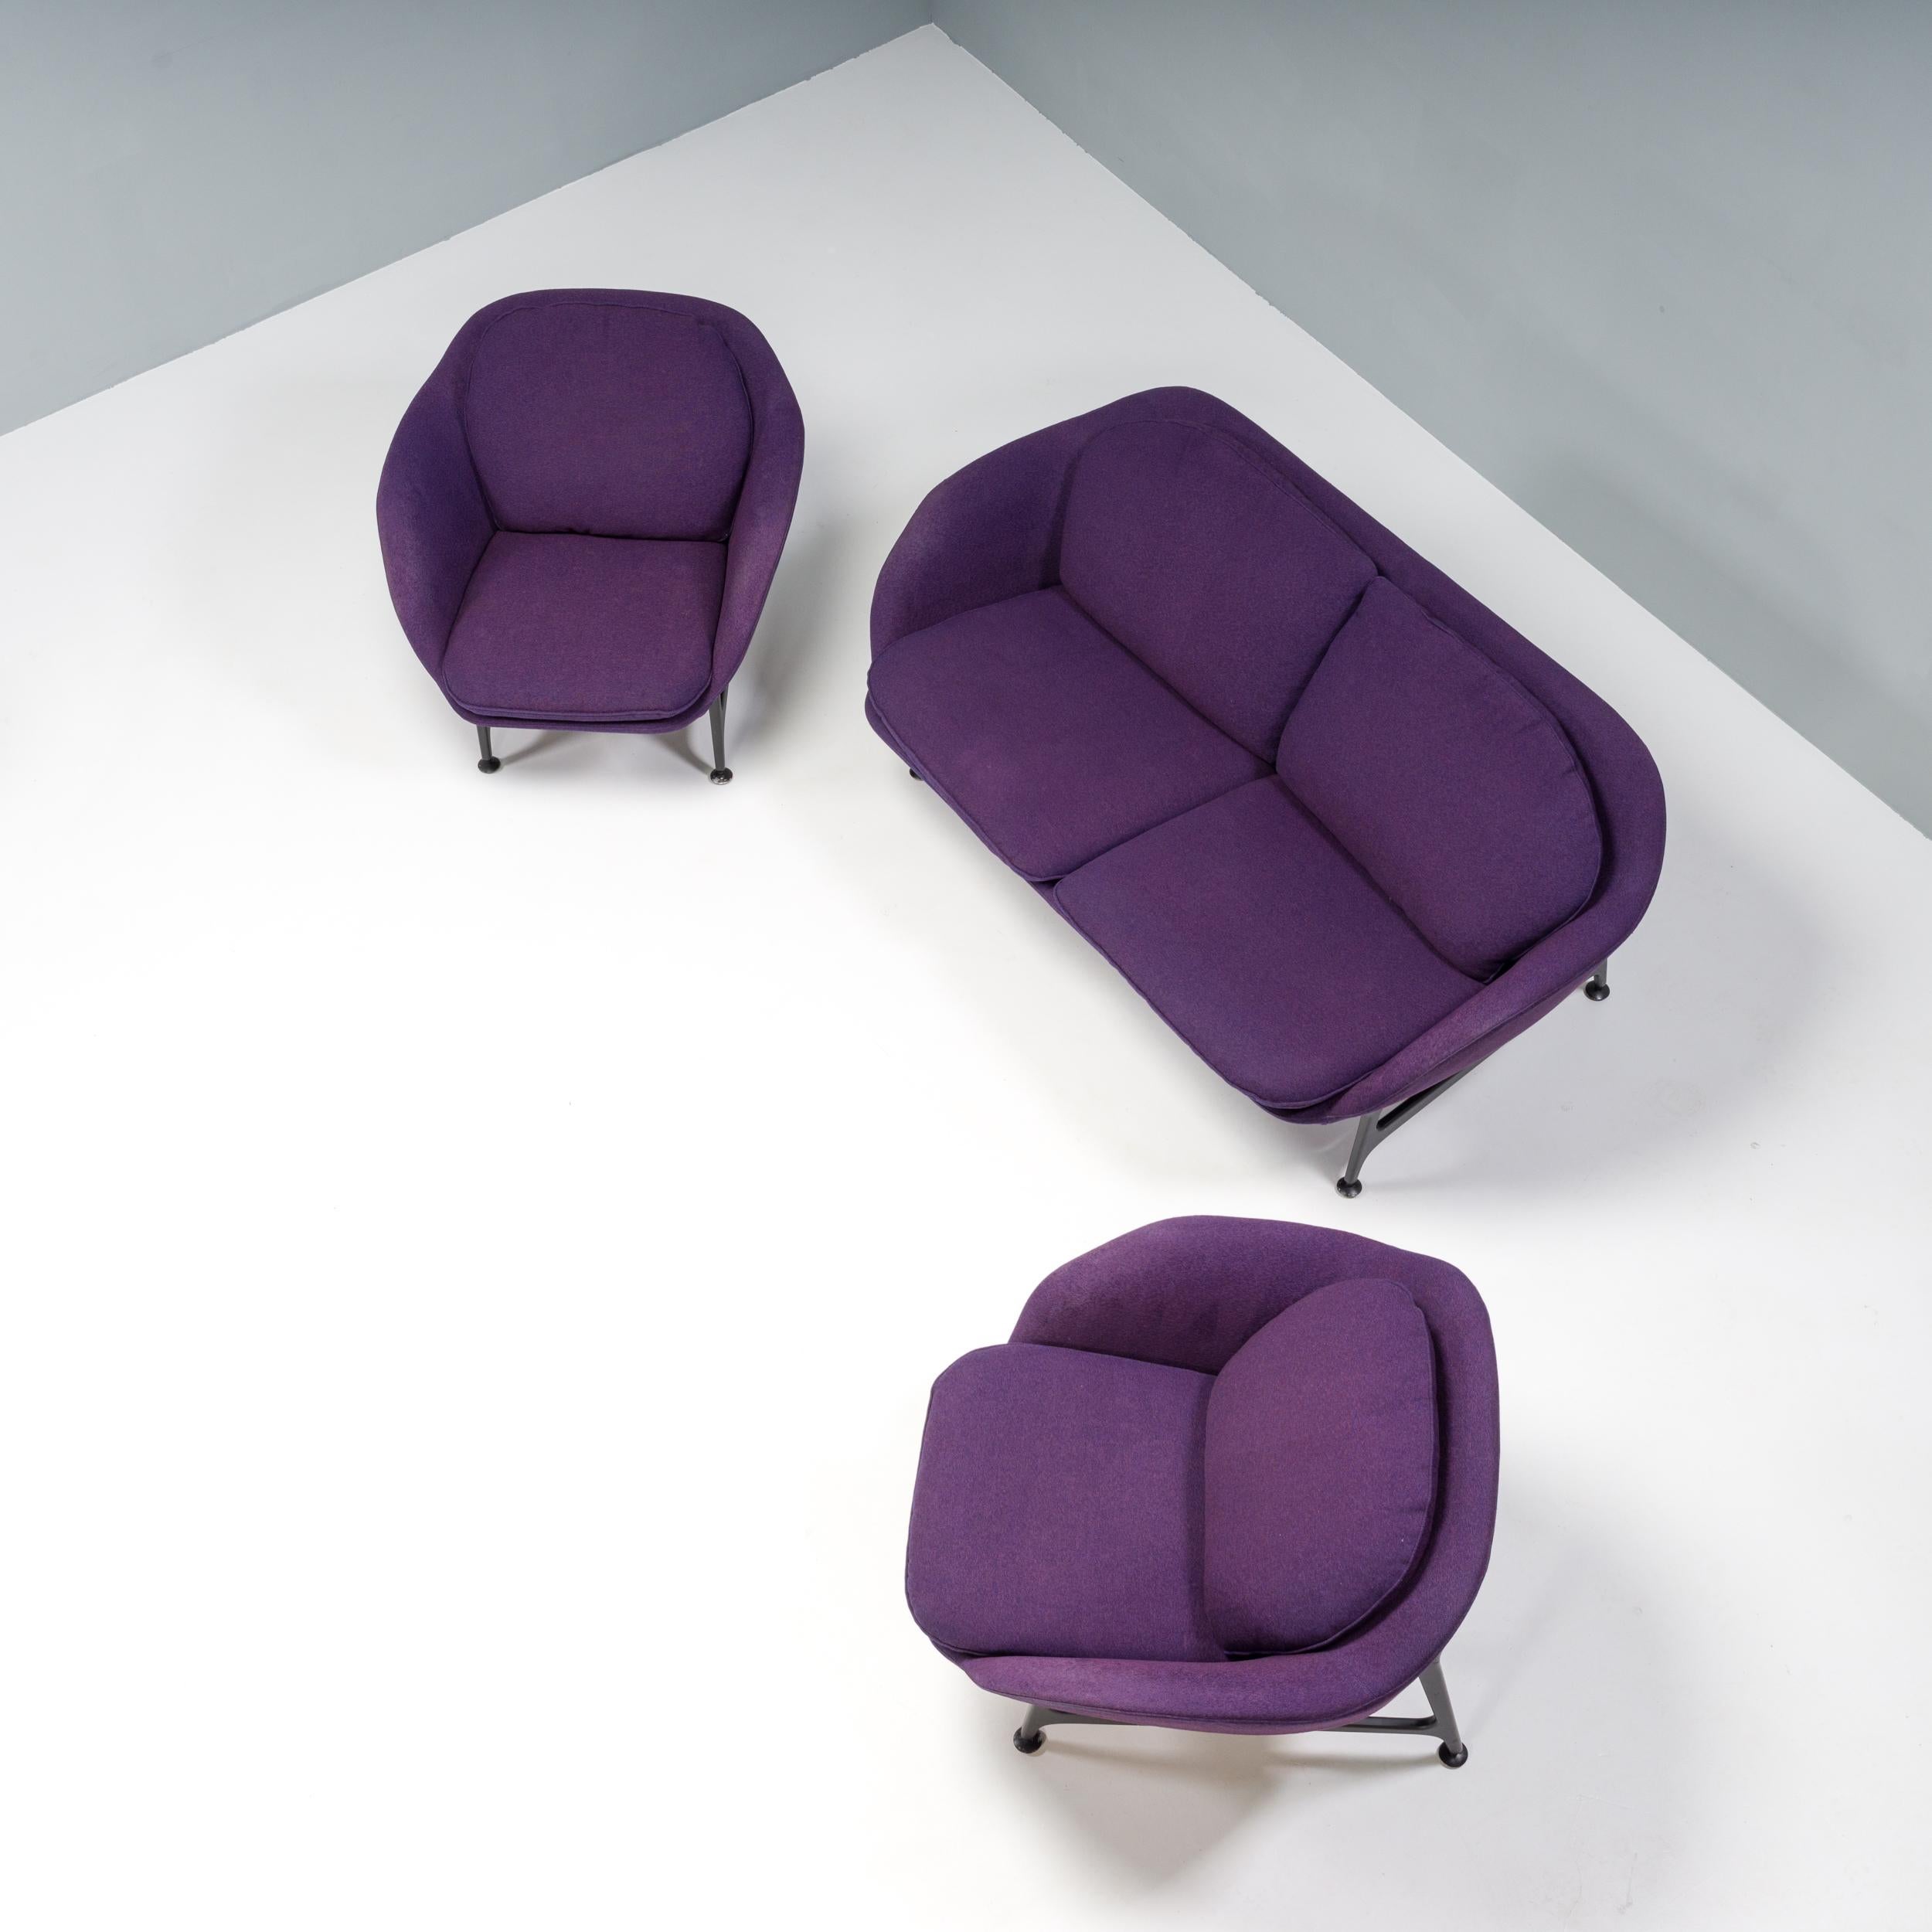 Die erstmals auf dem Salone del Mobile 2014 vorgestellte Sitzmöbelkollektion Vico wurde von Jaime Hayon für Cassina entworfen und nach seinem Sohn benannt.

Inspiriert von den Archiven von Cassina, schafft Hayon mit seinem Entwurf für Vico ein